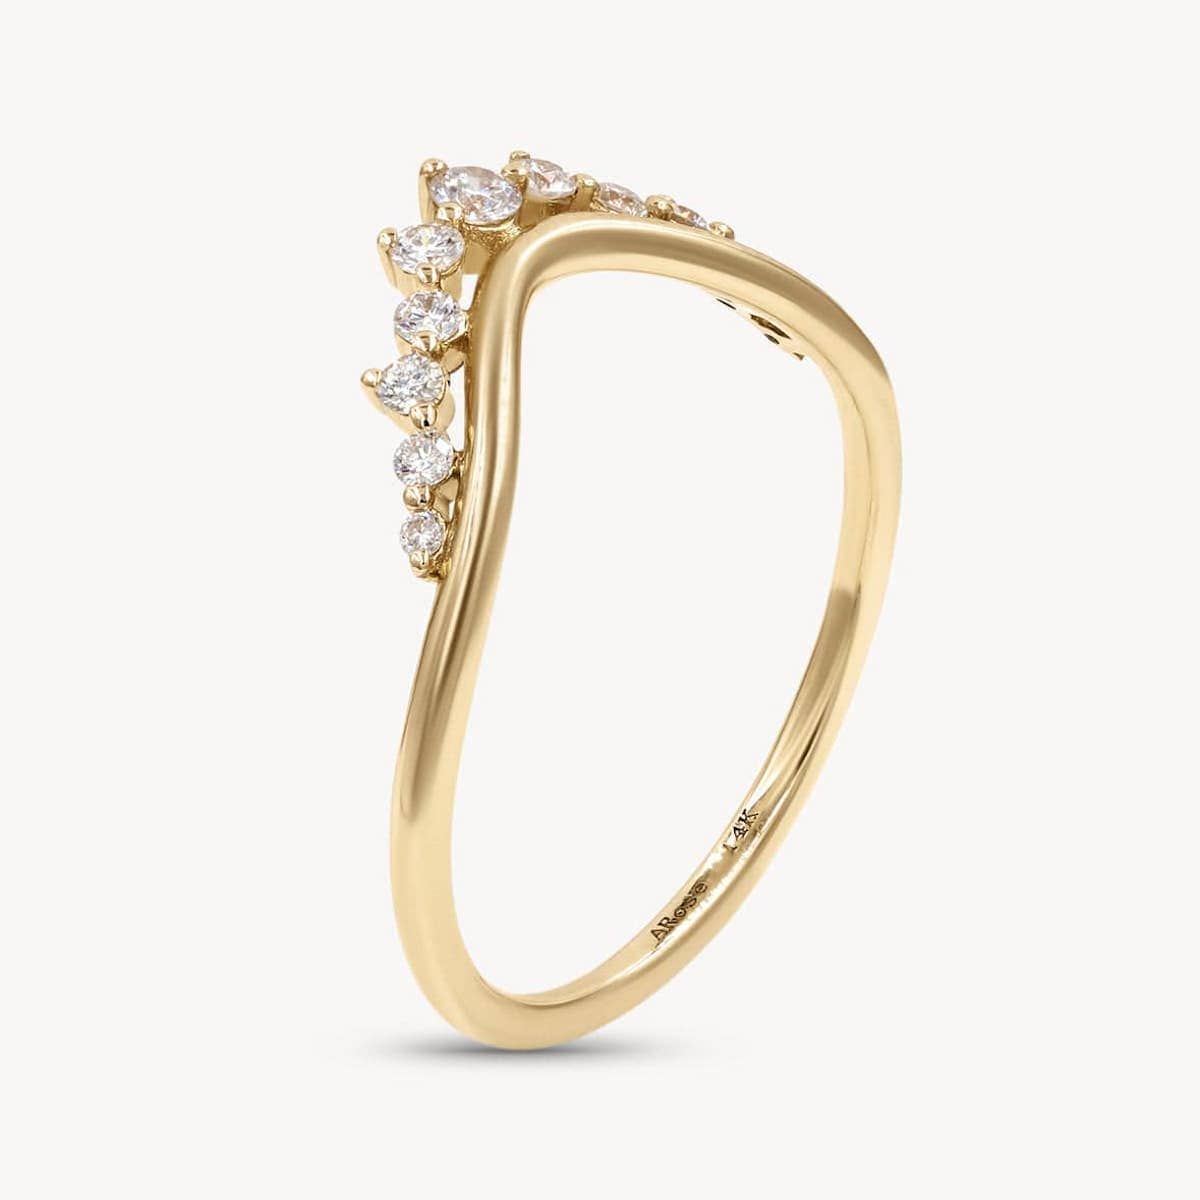 Grand Diamond Arch Ring